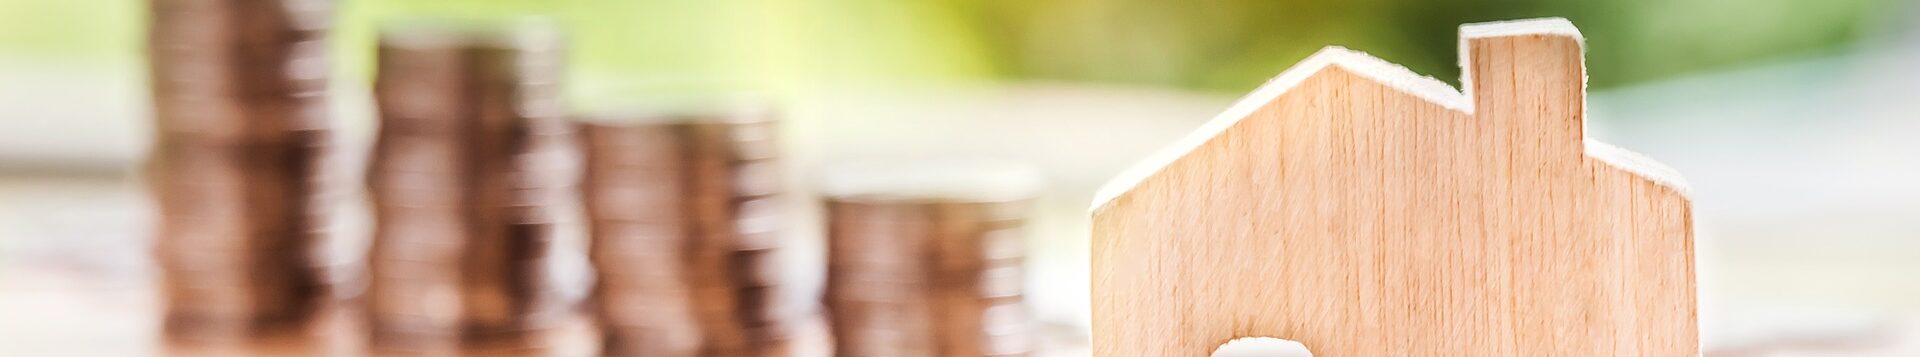 Symbolfoto Steuern und Abgaben: ein Spielzeughaus aus Holz, im Hintergrund, unscharf, gestapelte Münzen.